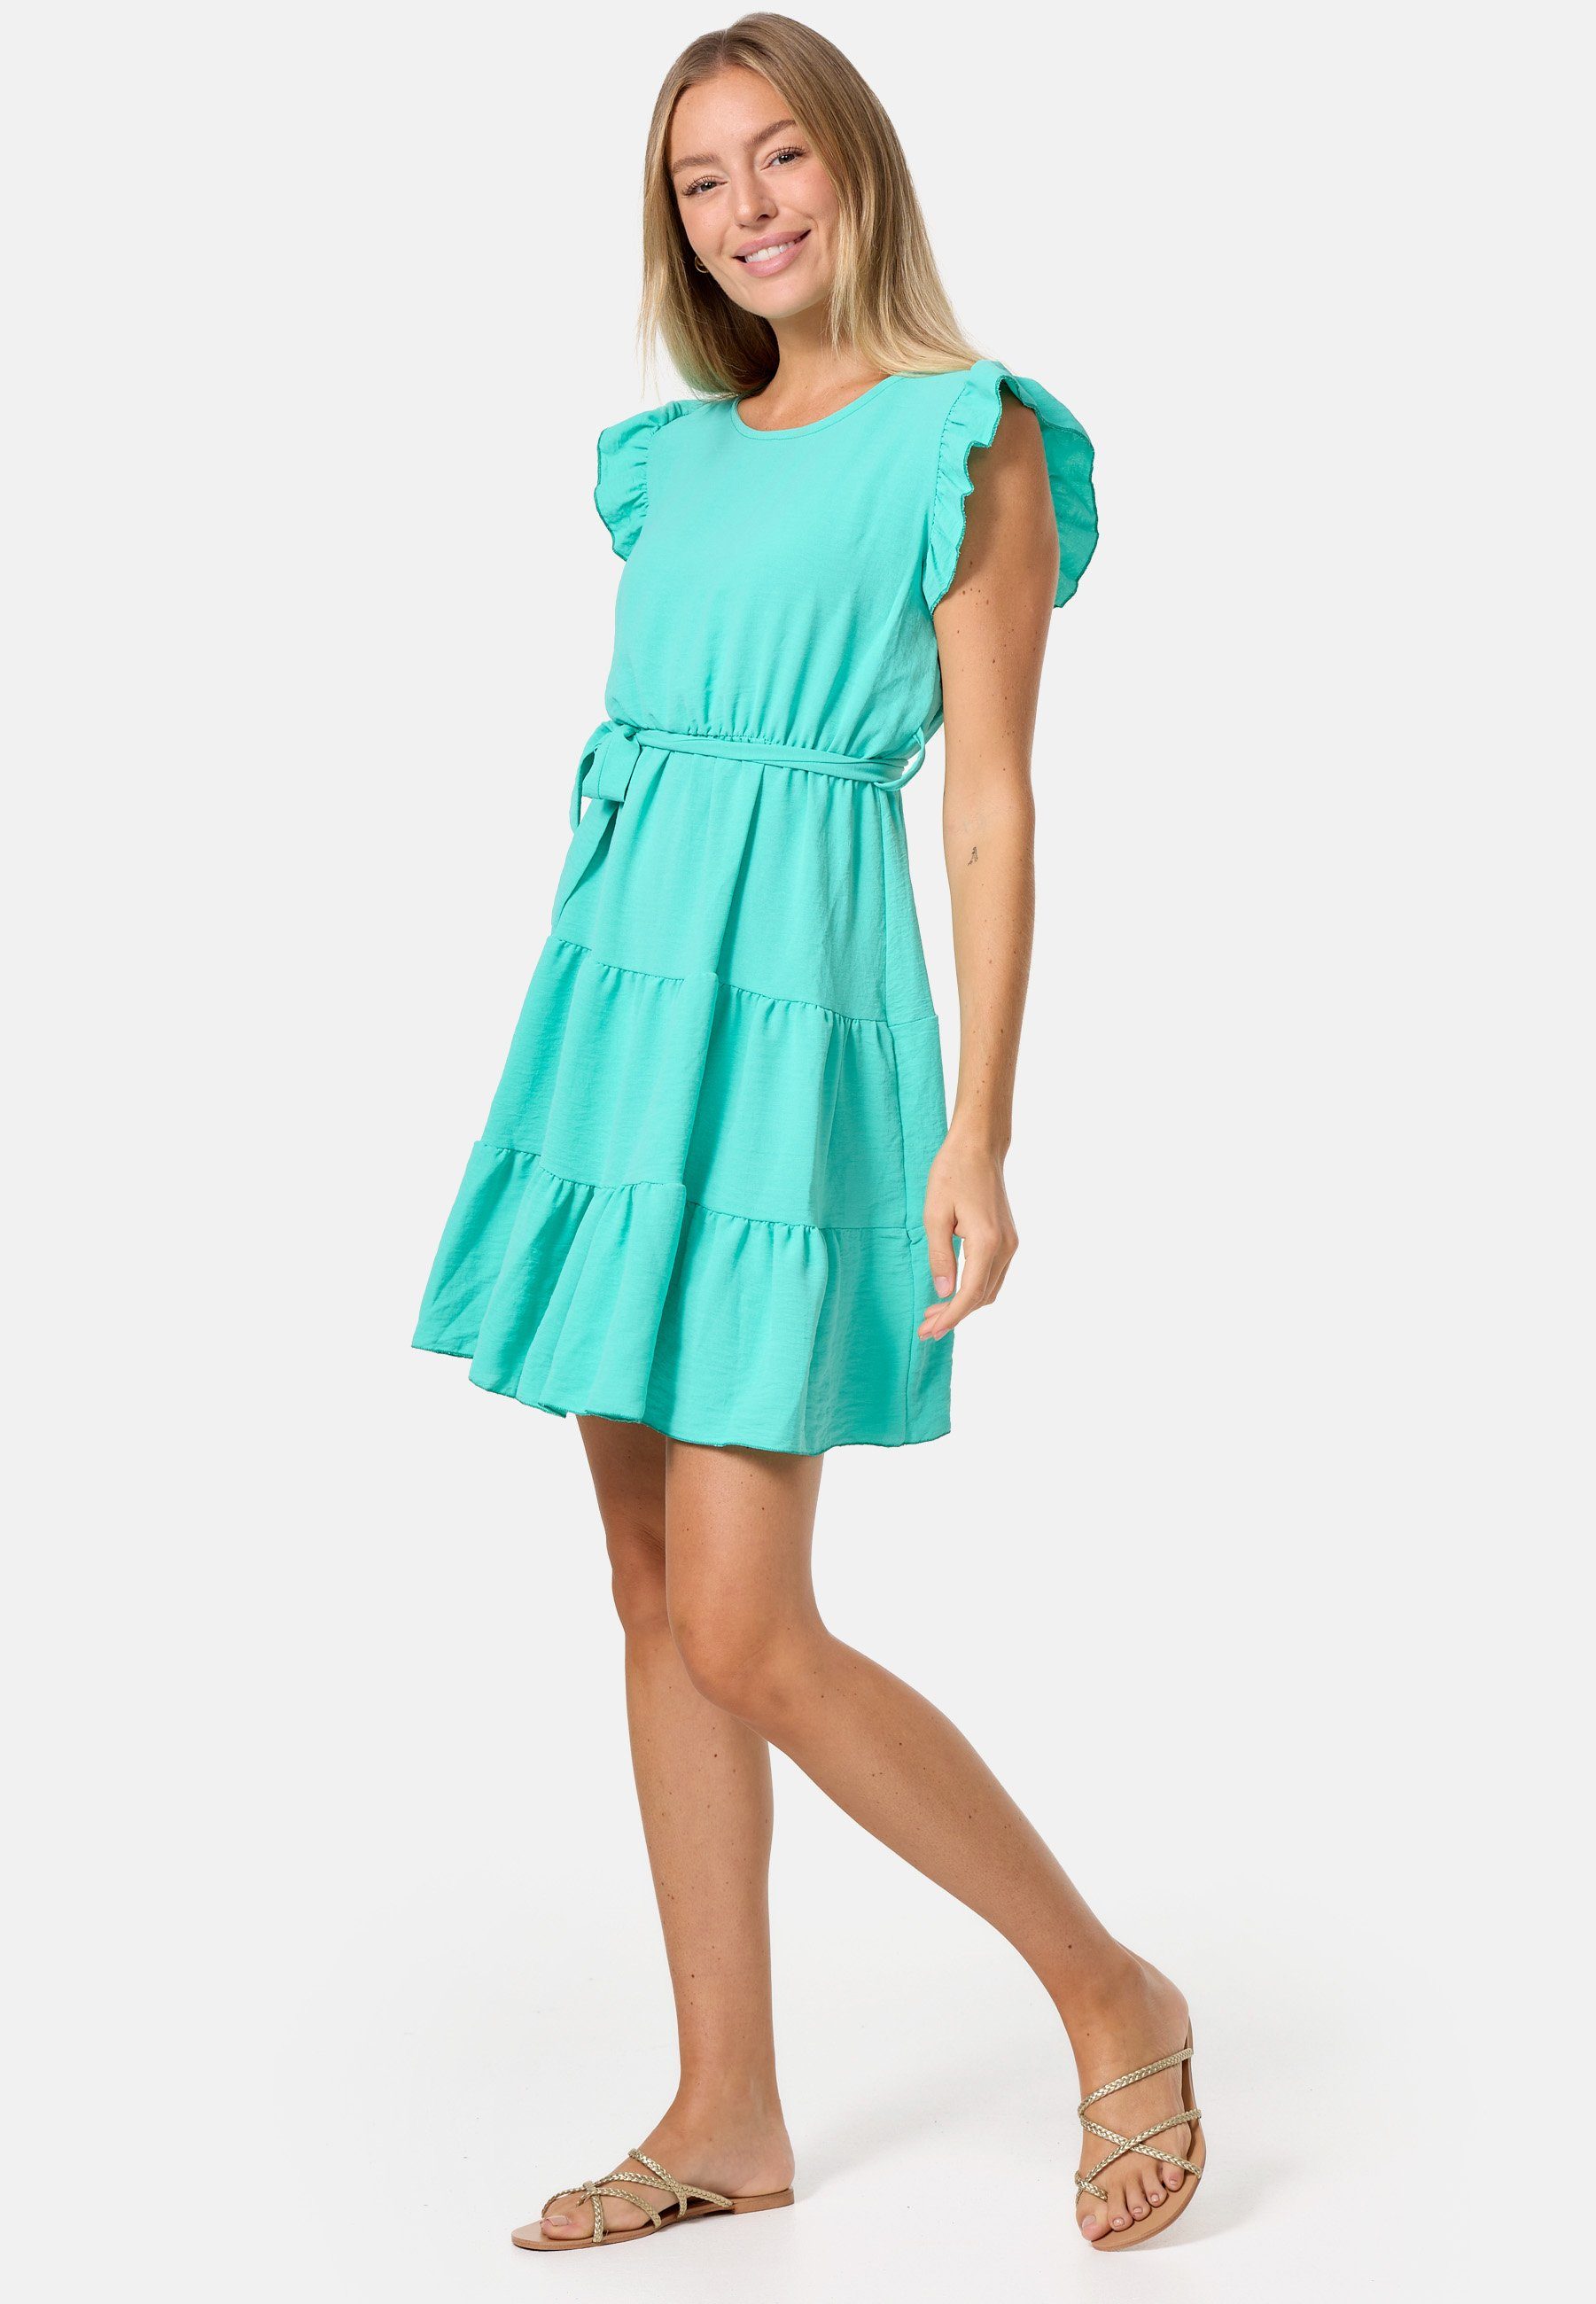 PM SELECTED Minikleid PM-27 (Sommerkleid Midi Kleid mit Rüschen in Einheitsgröße) Grün